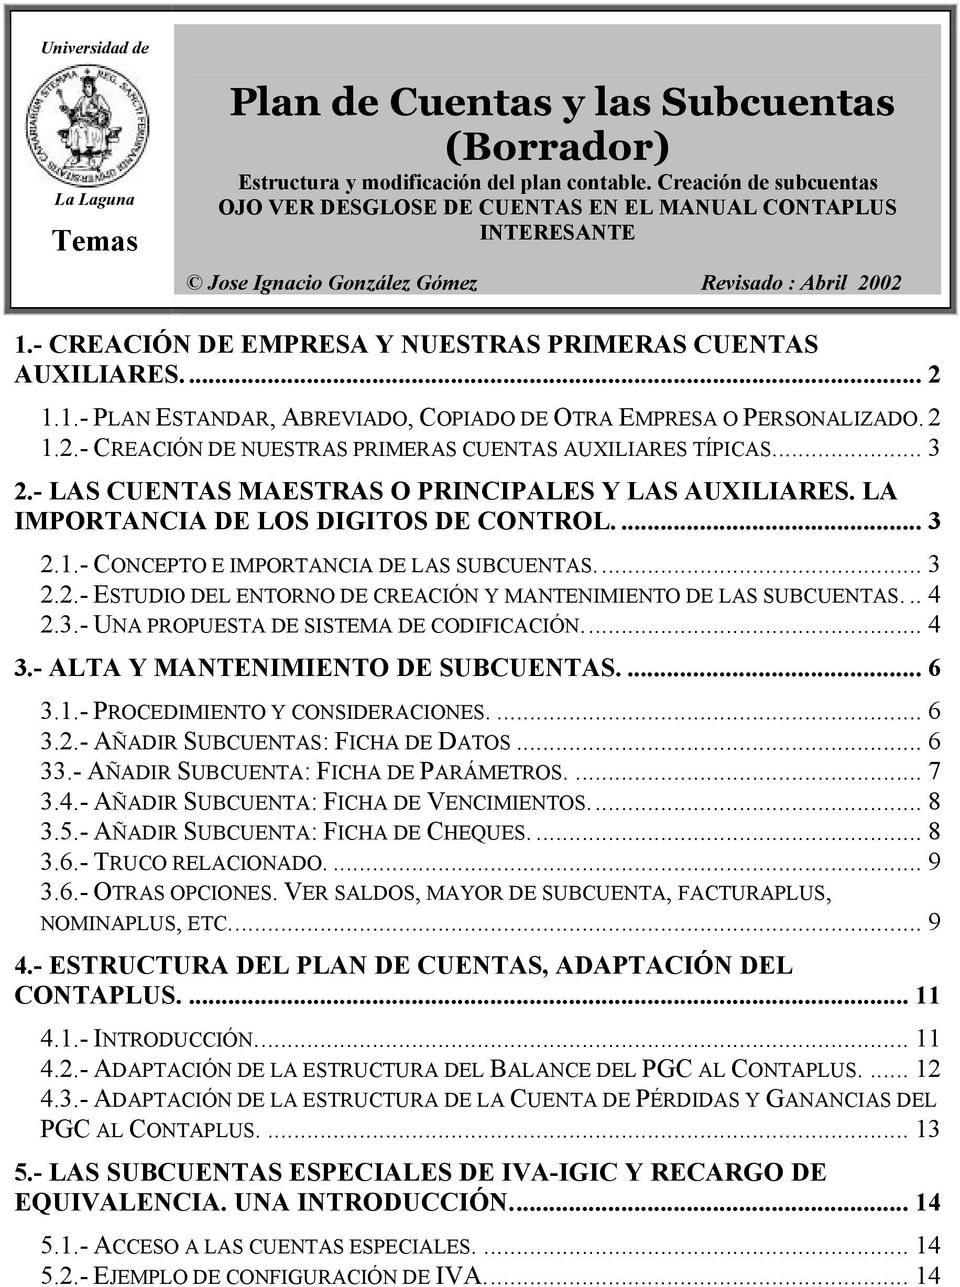 2 1.2.- CREACIÓN DE NUESTRAS PRIMERAS CUENTAS AUXILIARES TÍPICAS... 3 2.- LAS CUENTAS MAESTRAS O PRINCIPALES Y LAS AUXILIARES. LA IMPORTANCIA DE LOS DIGITOS DE CONTROL.... 3 2.1.- CONCEPTO E IMPORTANCIA DE LAS SUBCUENTAS.